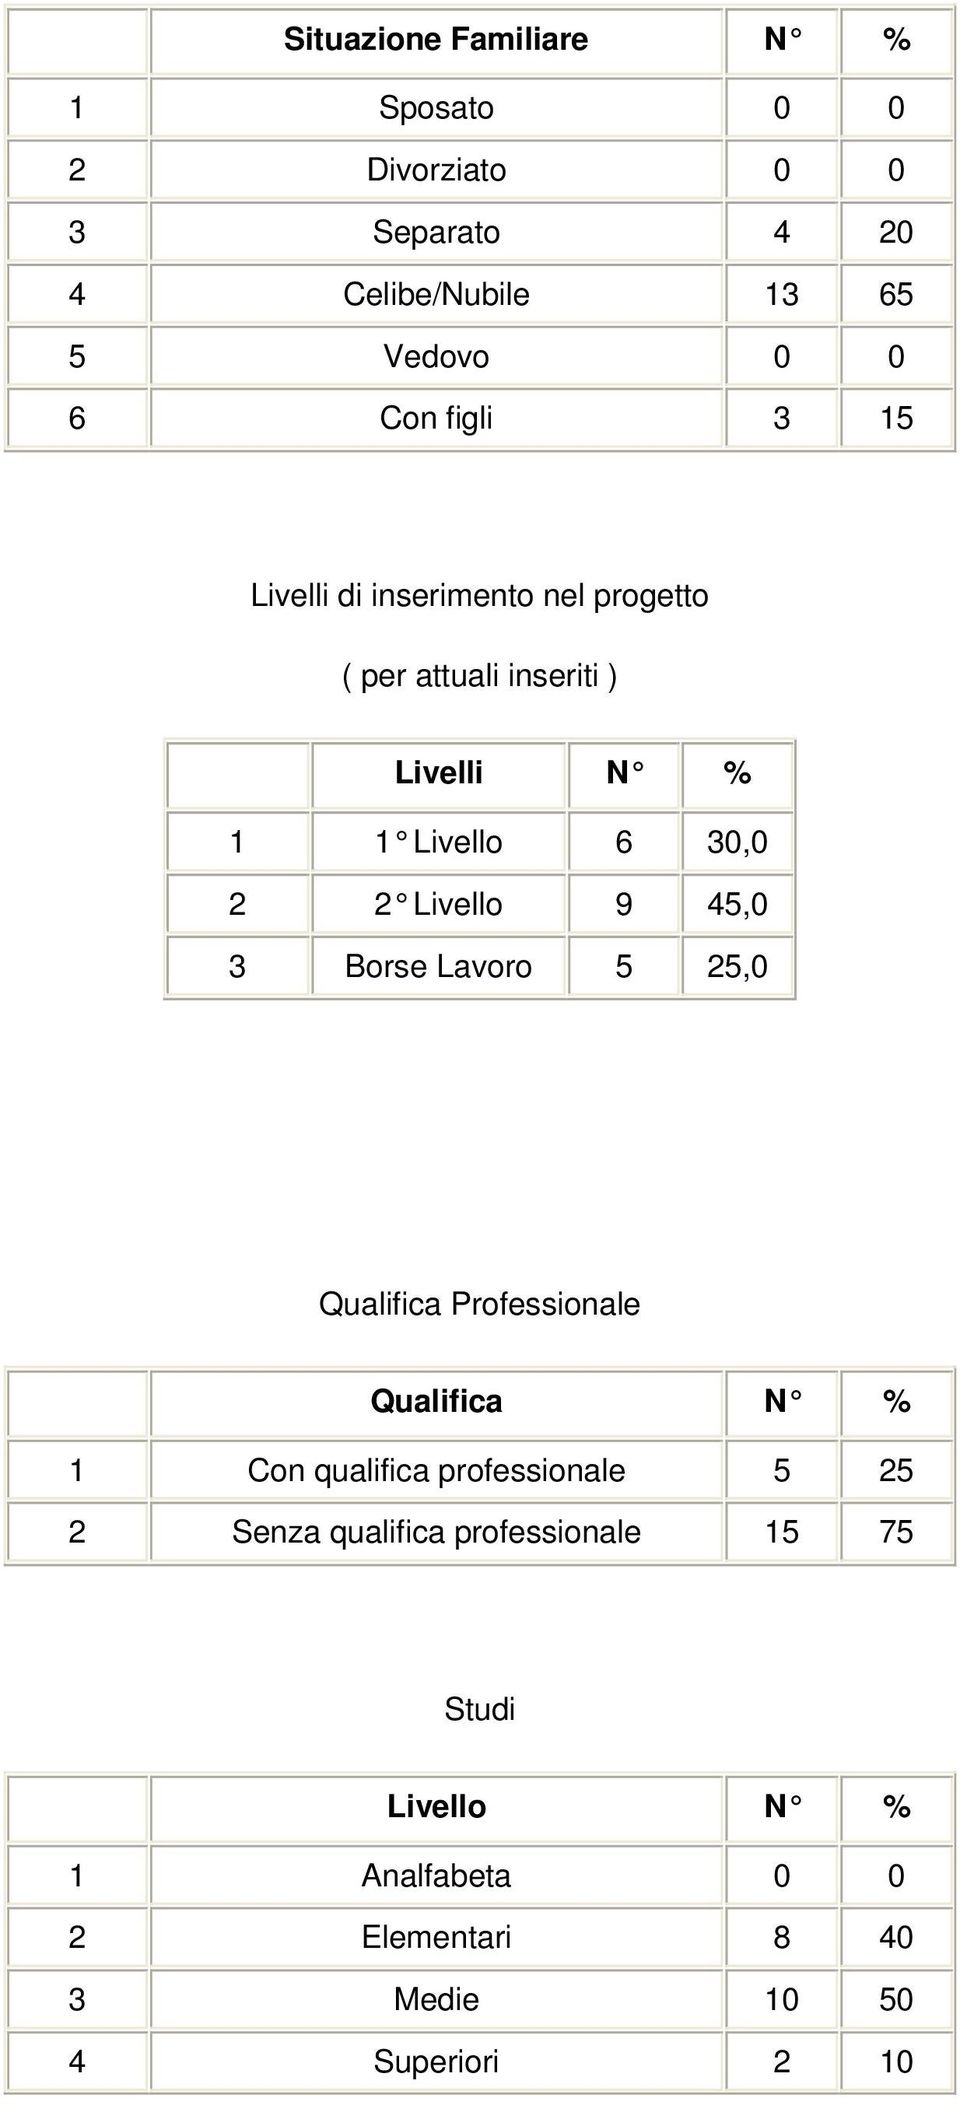 Livello 9 45,0 3 Borse Lavoro 5 25,0 Qualifica Professionale Qualifica N % 1 Con qualifica professionale 5 25 2